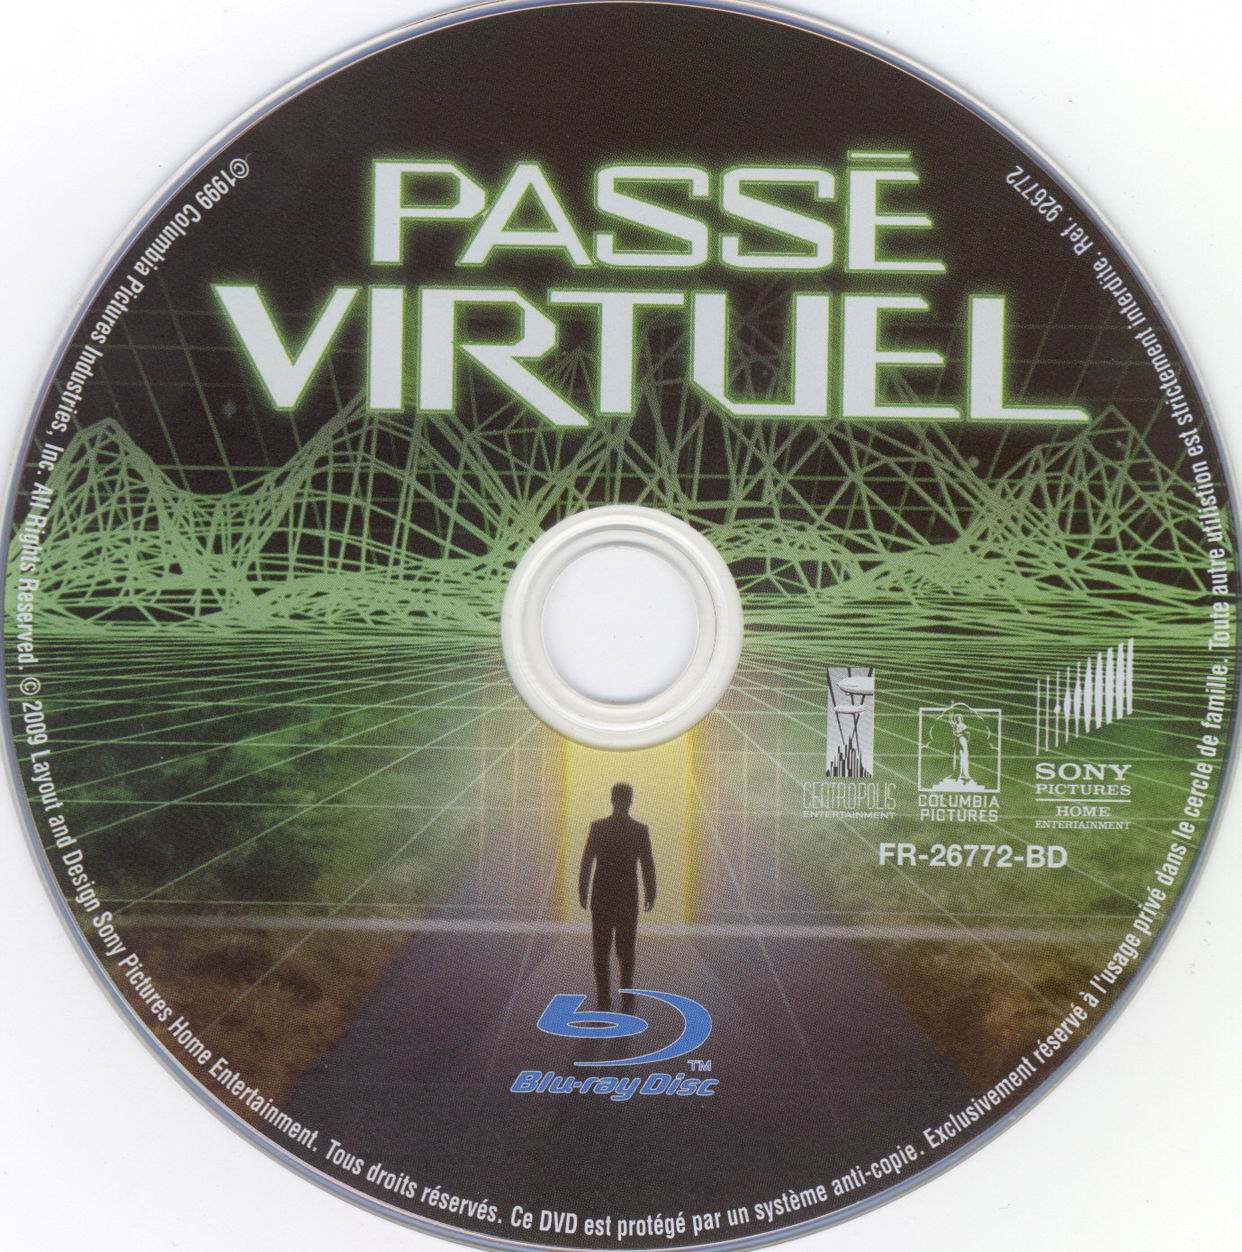 Pass virtuel (BLU-RAY)